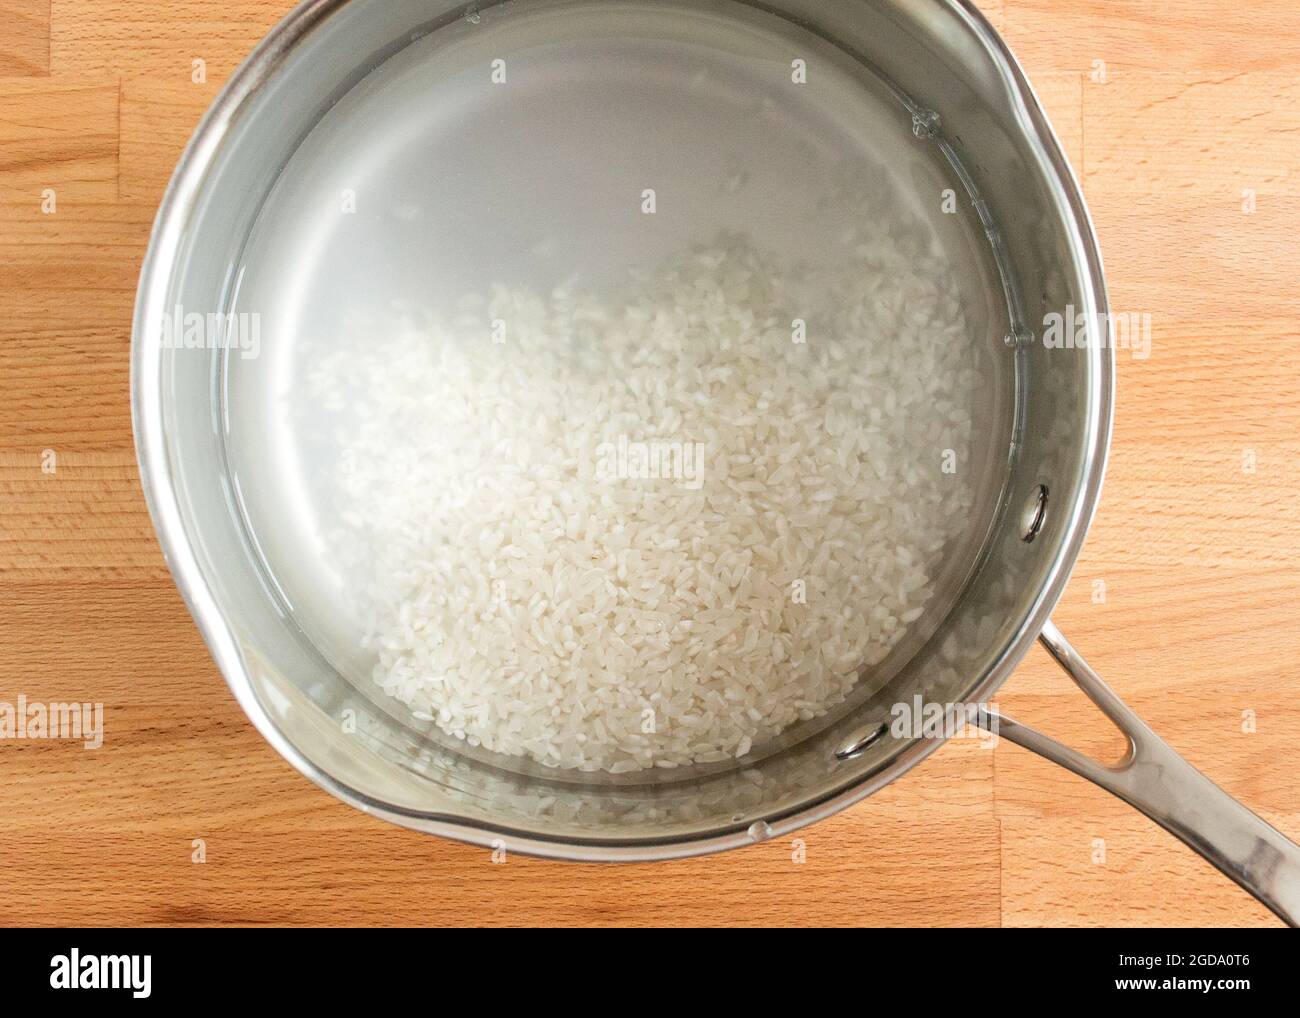 Der gewaschene Reis liegt in einer Schüssel mit Wasser. Stockfoto